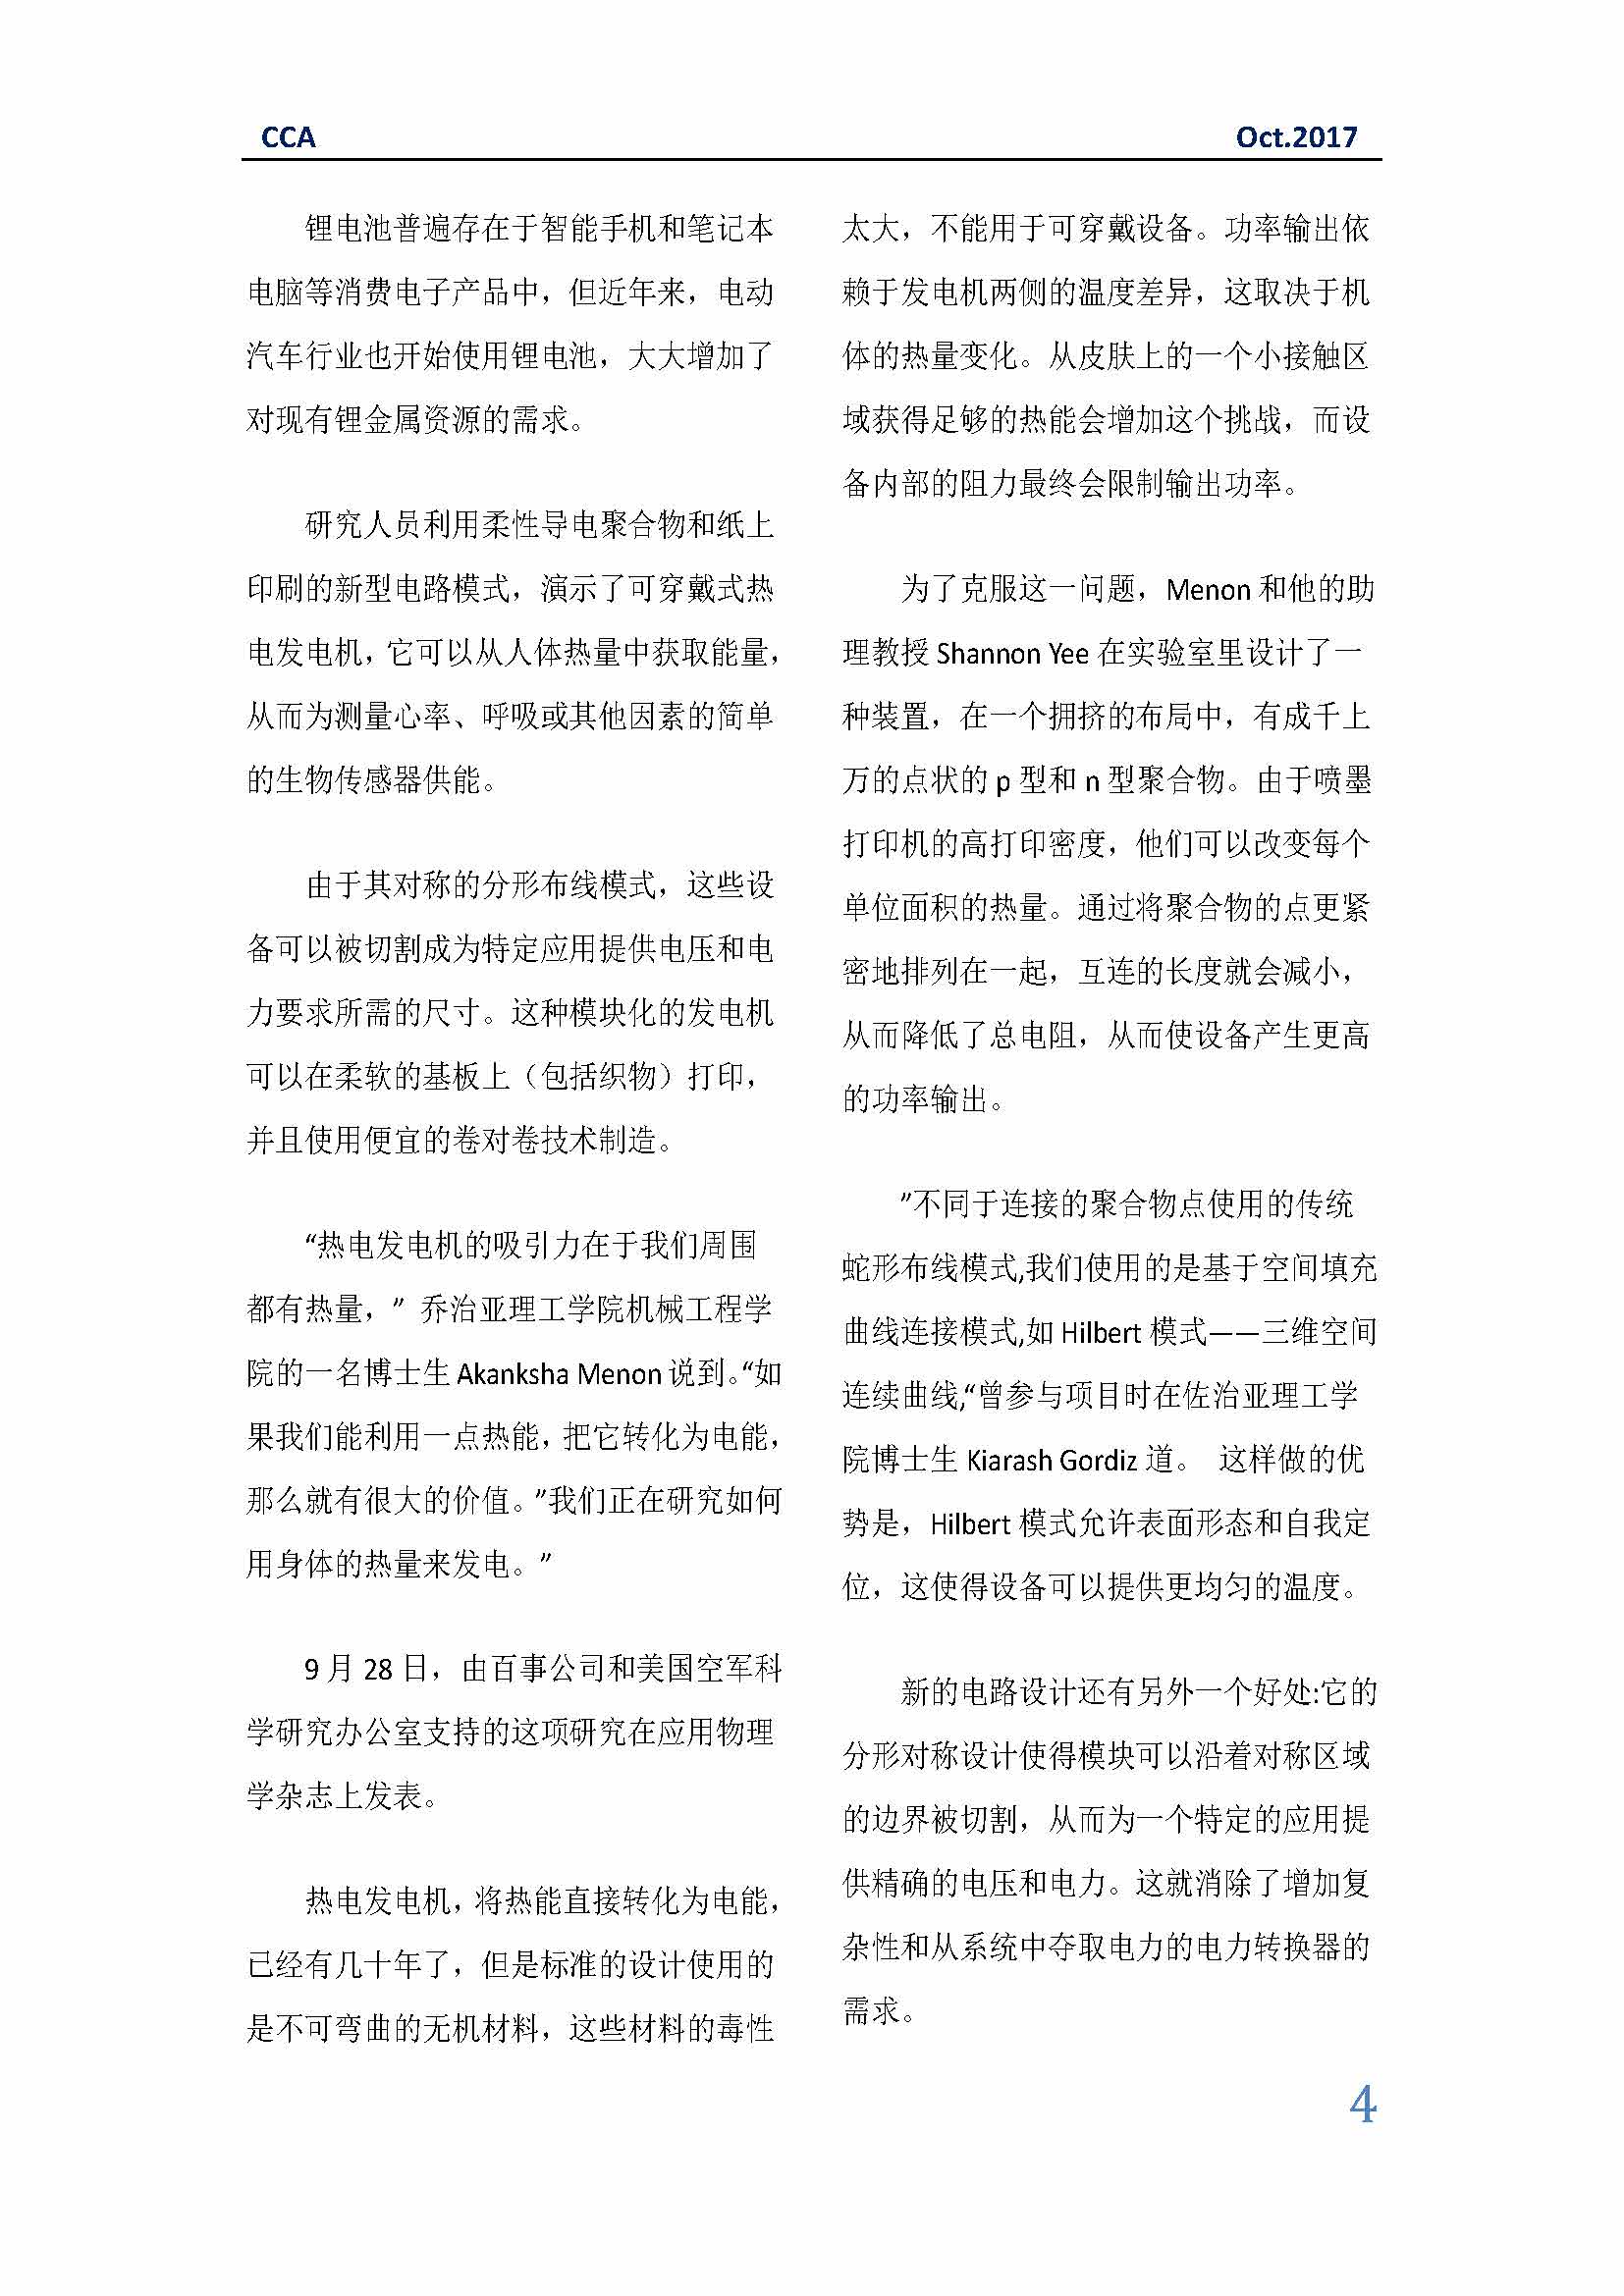 中国科技咨询协会国际快讯（第三十期）_页面_04.jpg